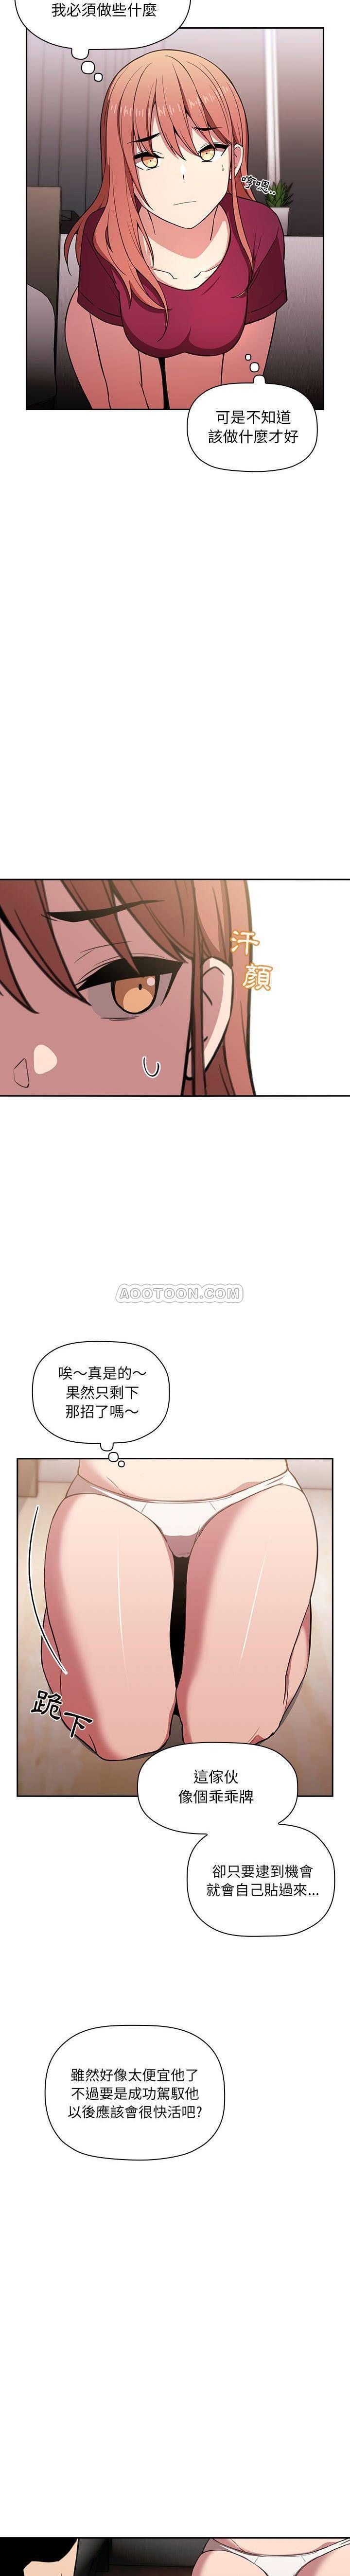 韩国污漫画 BJ的夢幻直播 第10话 20